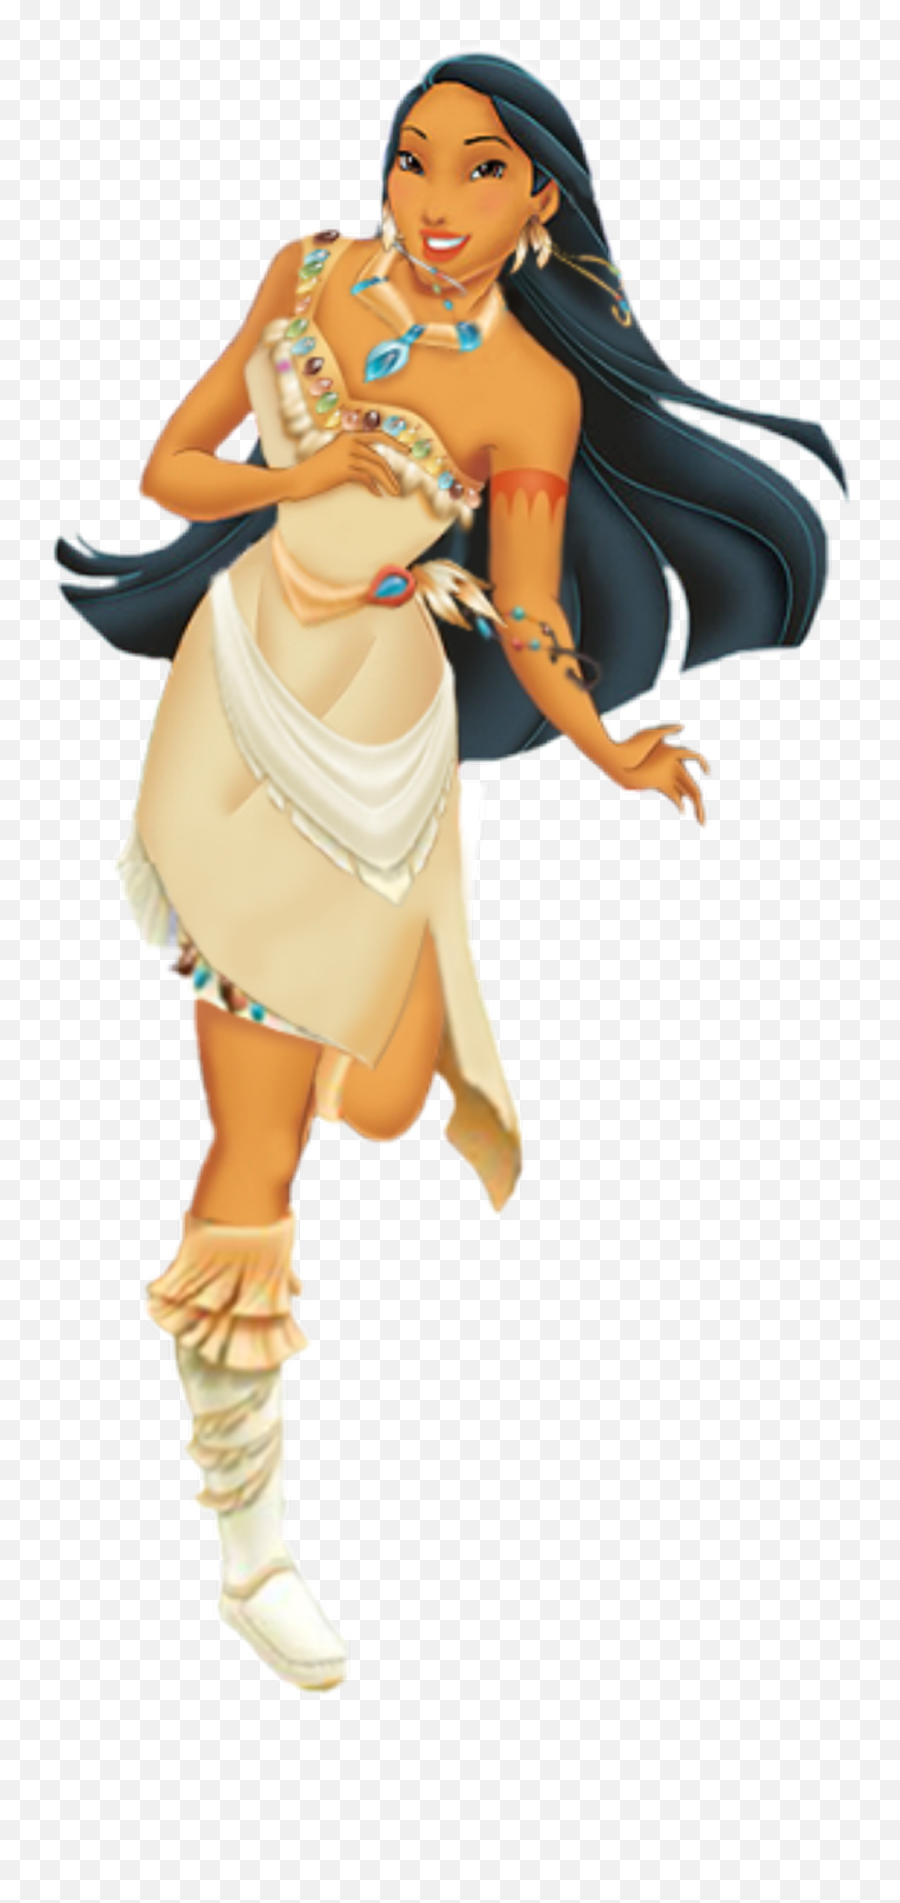 Clipart Disney Princess Pocahontas - Disney Princess Pocahontas Png,Pocahontas Png